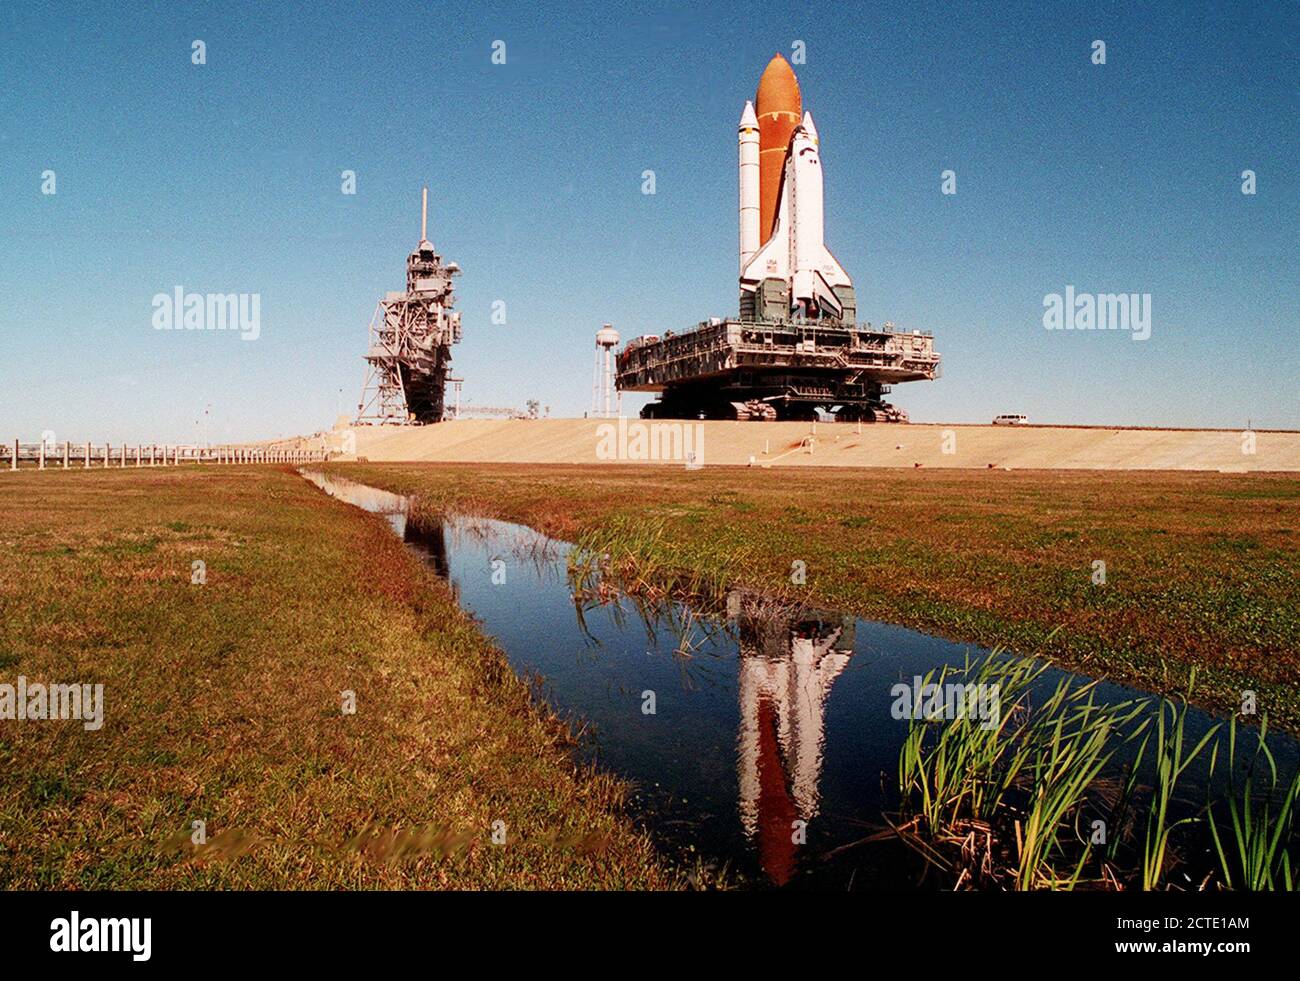 Un massiccio 19 milioni di sterline-Plus (8,6 milioni di chilogrammi) della navetta spaziale, supporto e hardware di trasporto pollice verso Launch Pad 39a dal gruppo del veicolo edificio. L' completamente asssembled Space Shuttle Endeavour, meno il suo payload, pesa circa 4.5 milioni di sterline (2 milioni di kg.); il mobile piattaforma di lancio, su cui è stato assemblato e dalla quale si sollevare, pesa 9,25 milioni di sterline (4,19 milioni di kg.); e il crawler-transporter portando la piattaforma e il ritegno a dischetto in a circa 6 milioni di sterline (2,7 milioni di kg.). Foto Stock